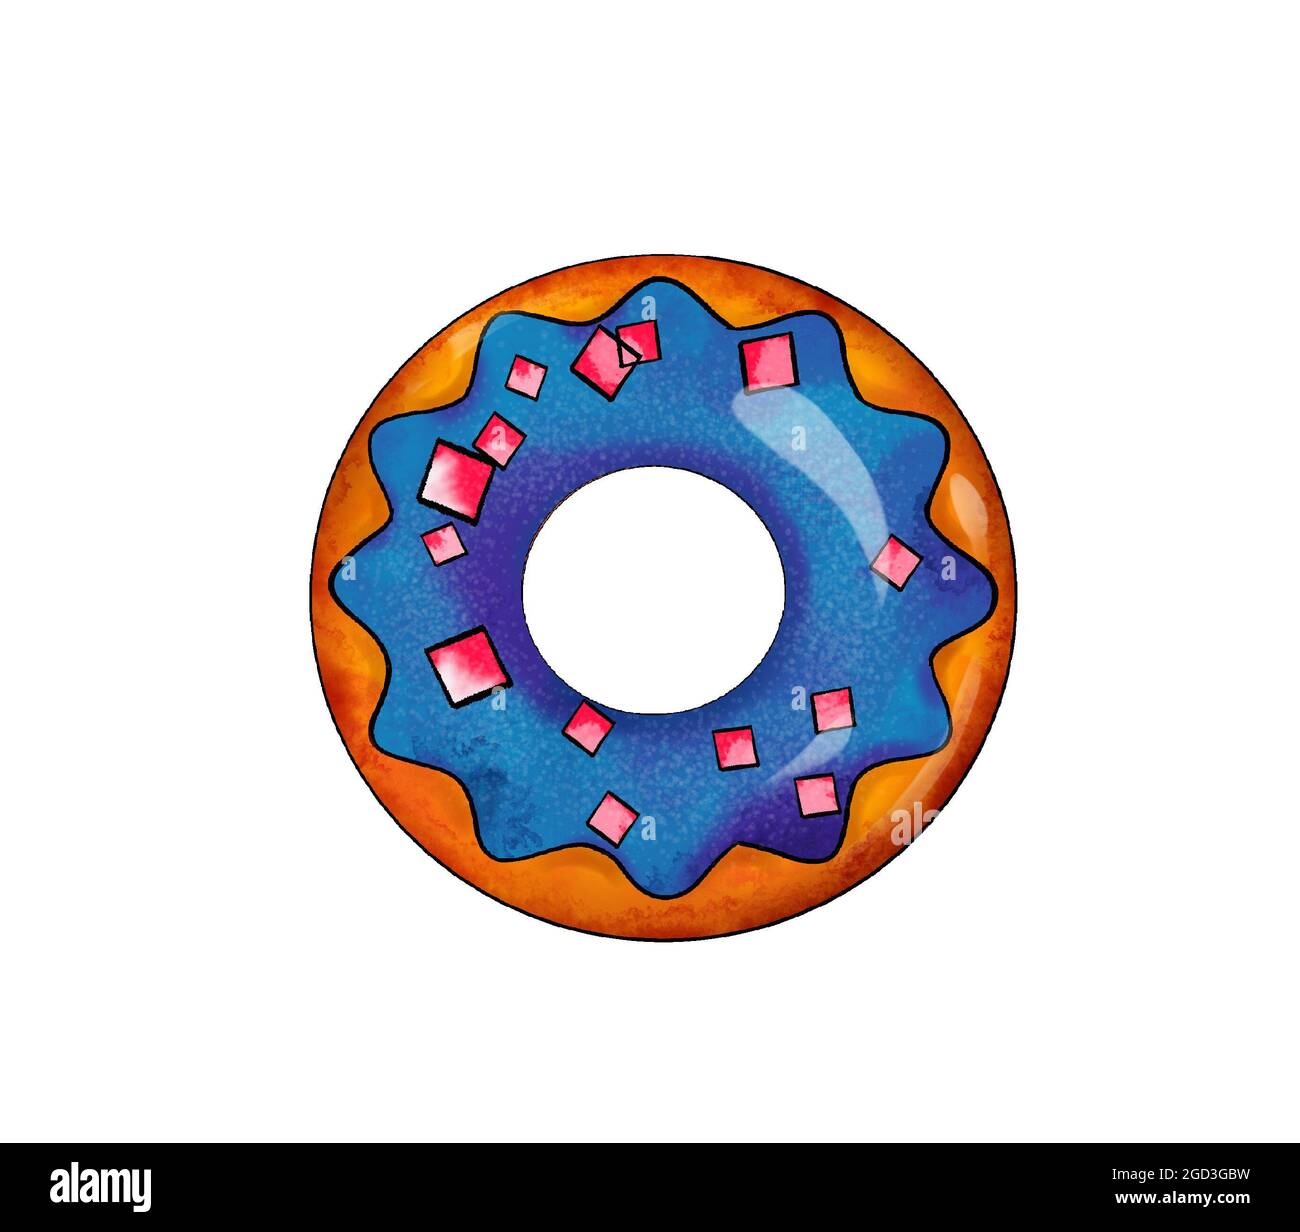 Illustration d'un dessin coloré de bonbons - beignets avec glacis de différentes couleurs sur un fond blanc isolé. Illustration de haute qualité Banque D'Images